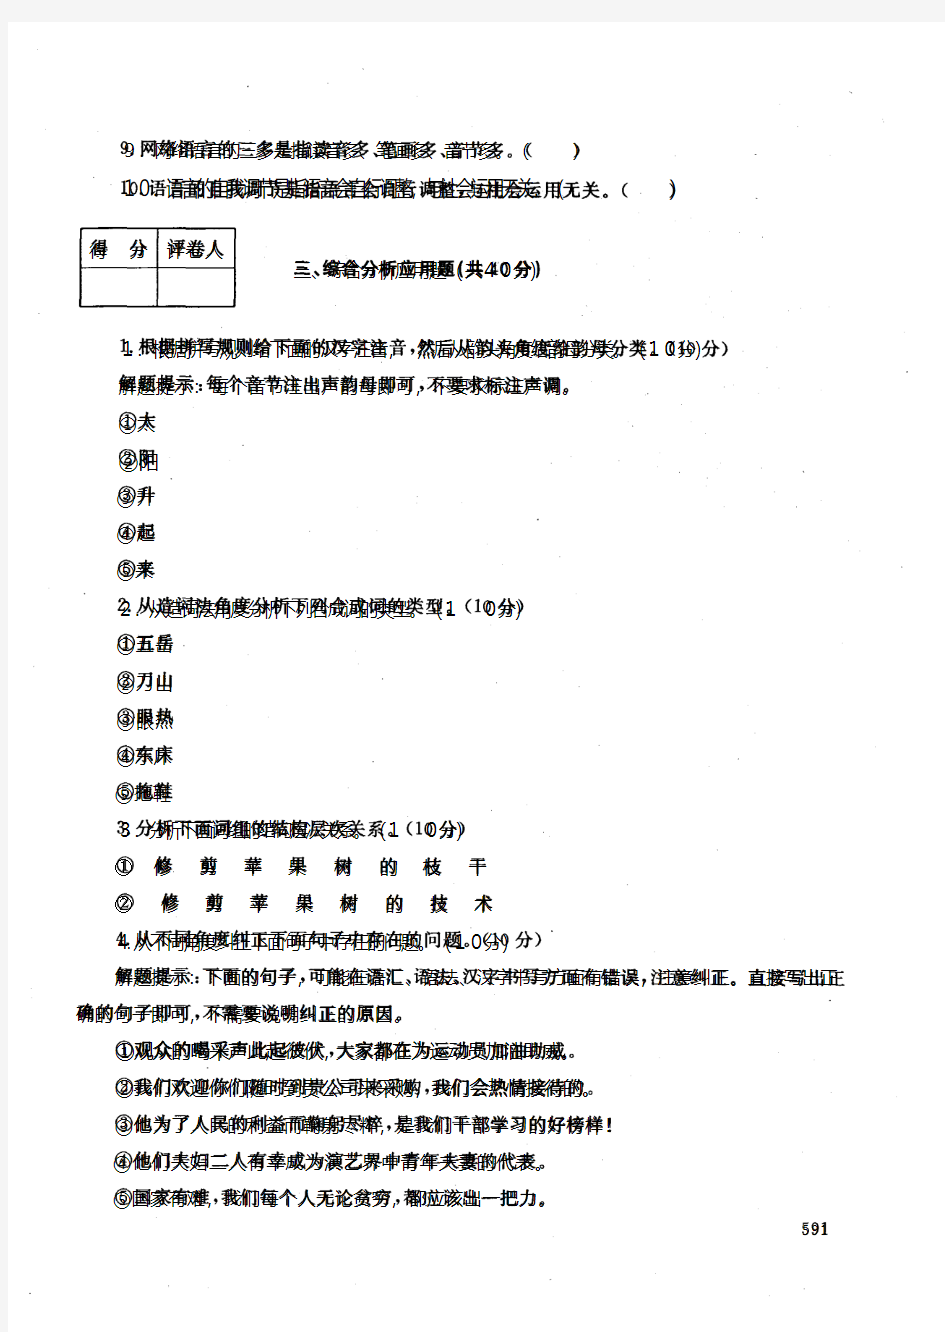 中央电大开放本科汉语言文学专业汉语专题试题(1)_1001